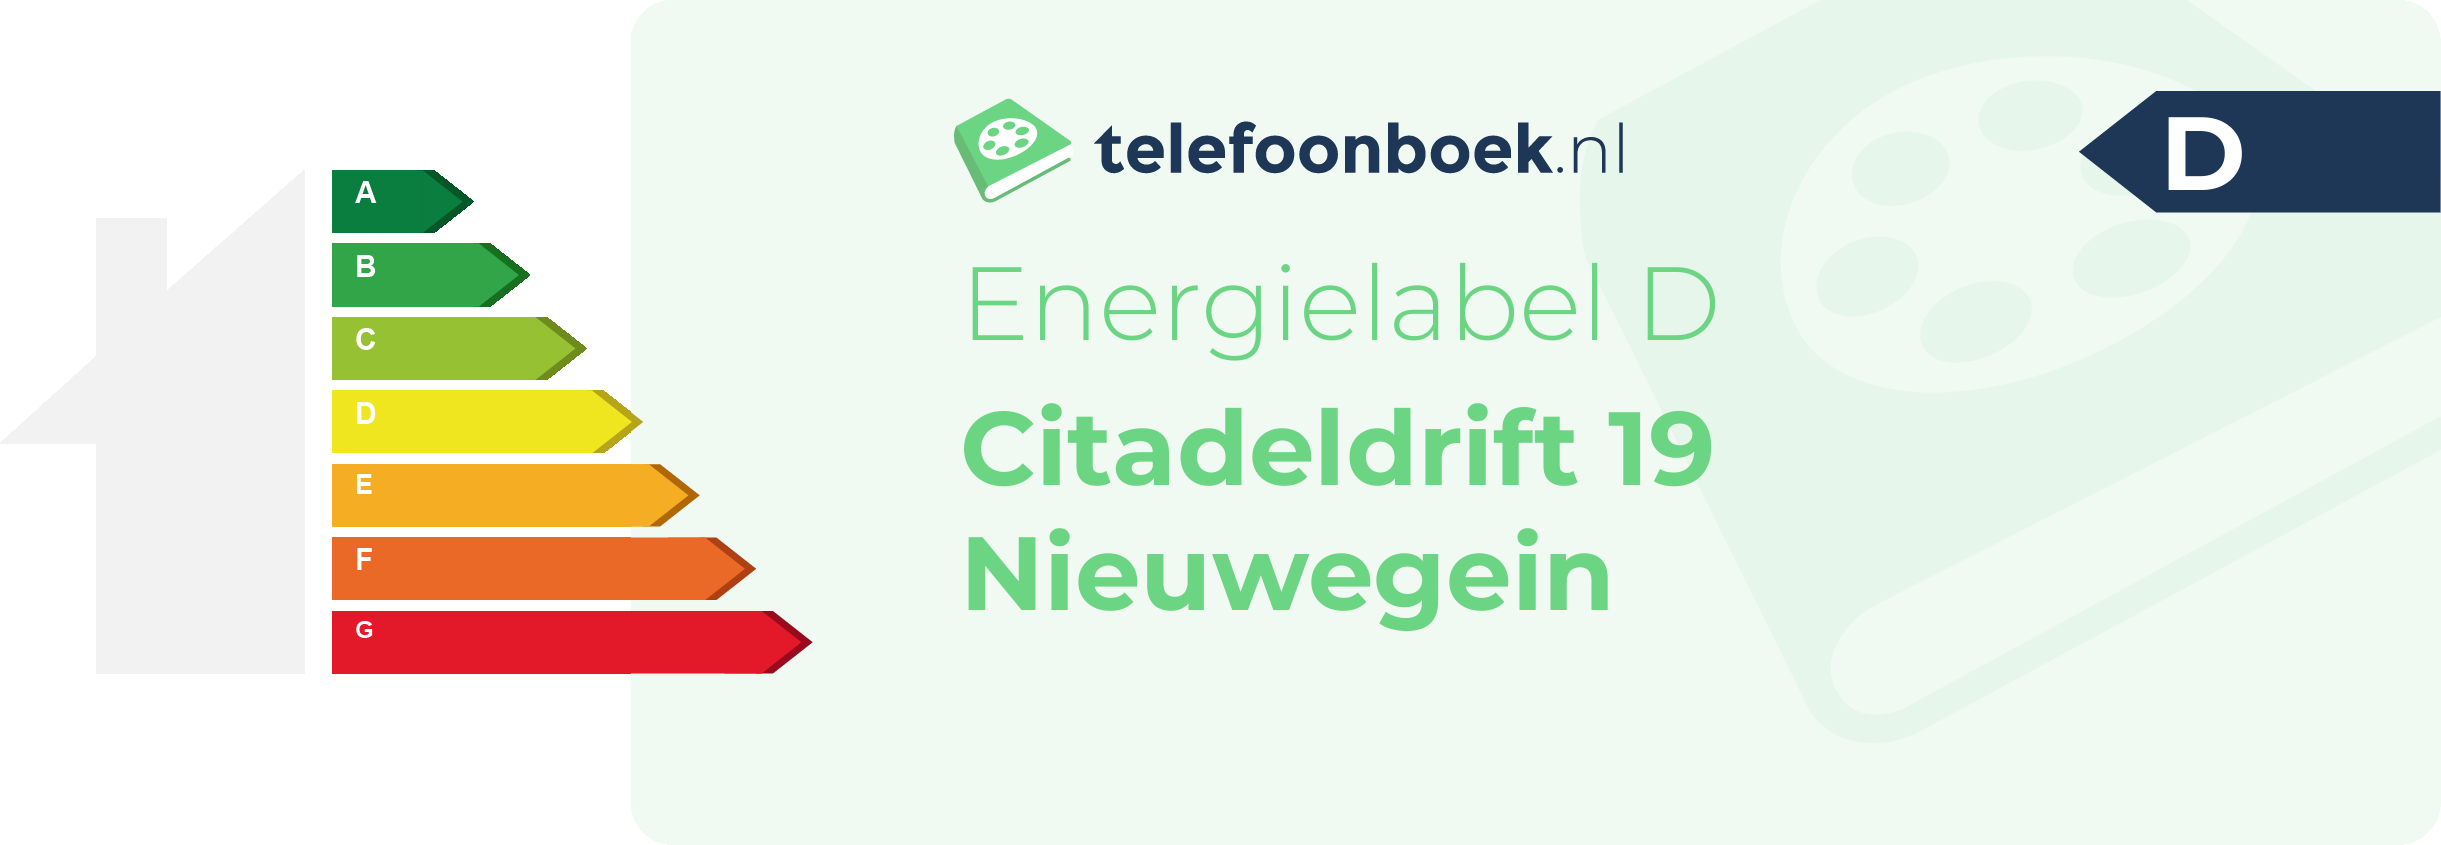 Energielabel Citadeldrift 19 Nieuwegein